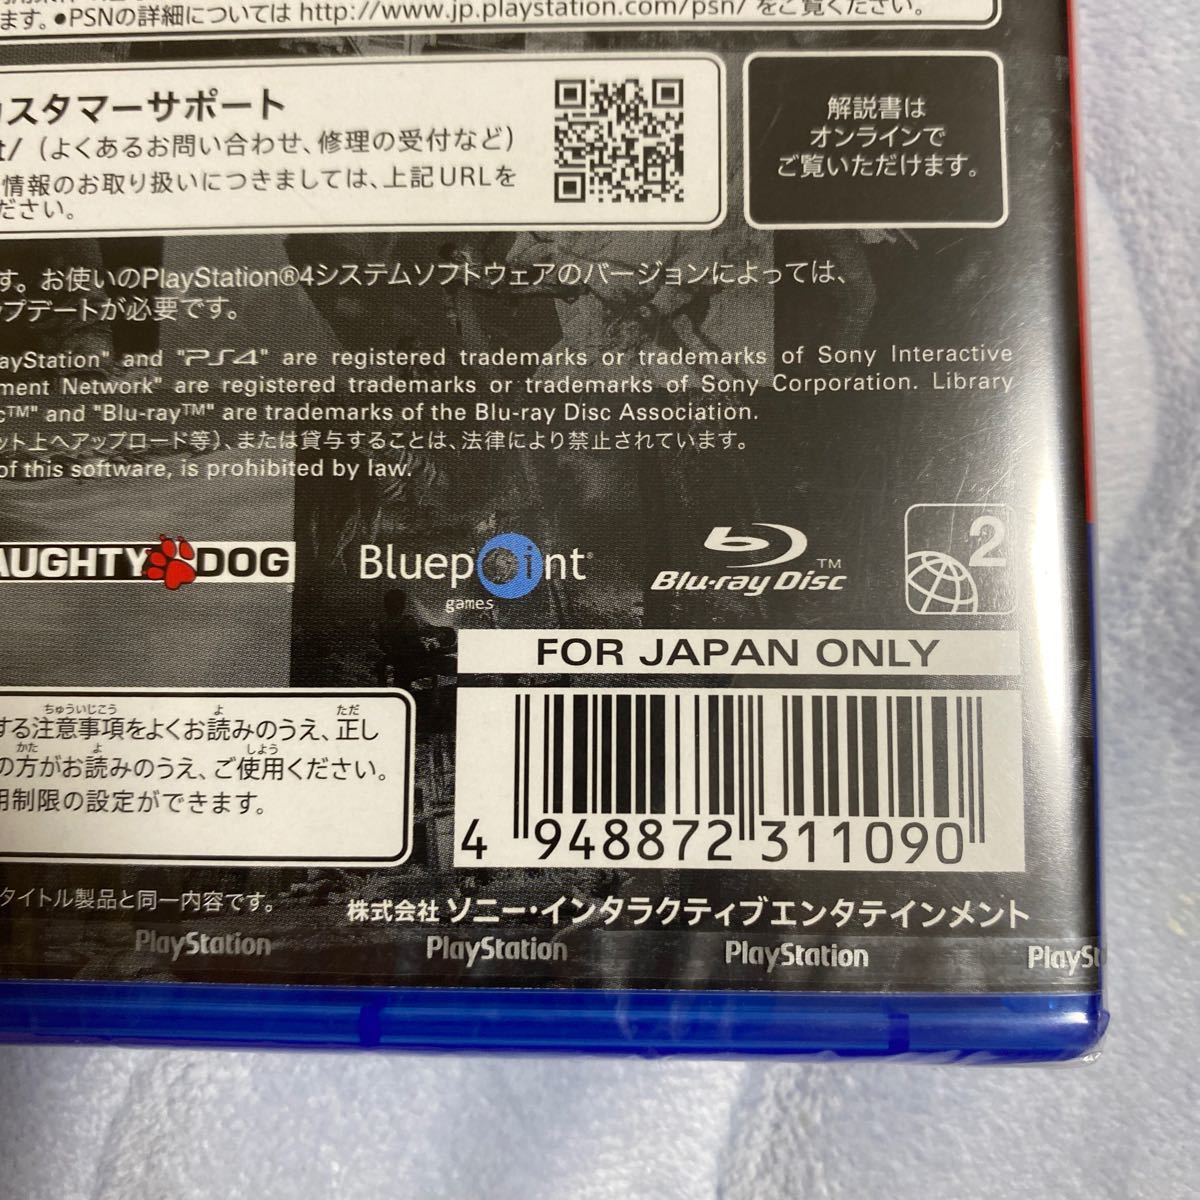 【PS4】 アンチャーテッド コレクション [PlayStation Hits]